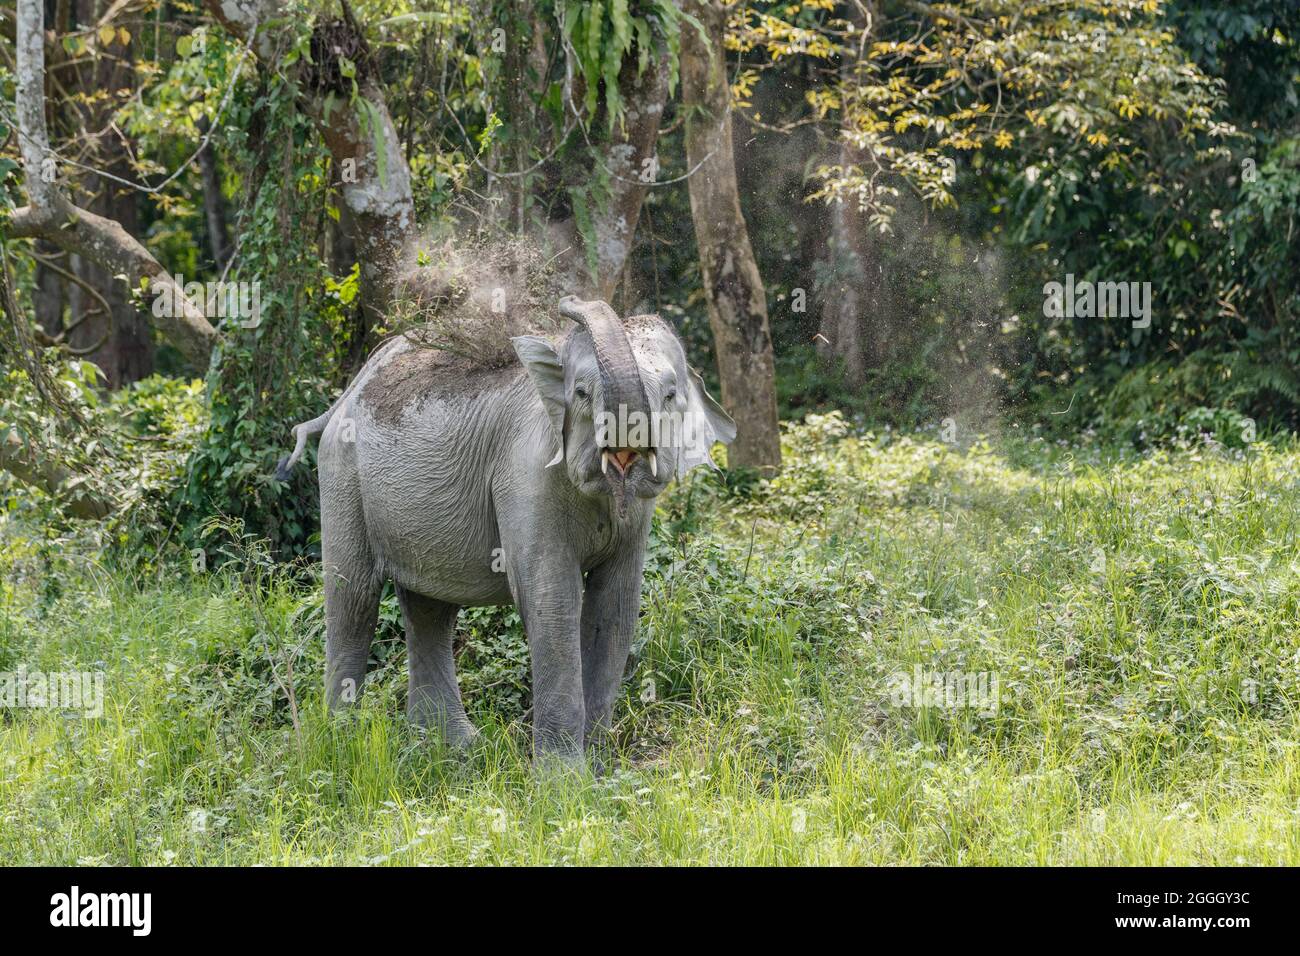 Asian elephant (Elephas maximus), dusting body. Kaziranga National Park, India Stock Photo